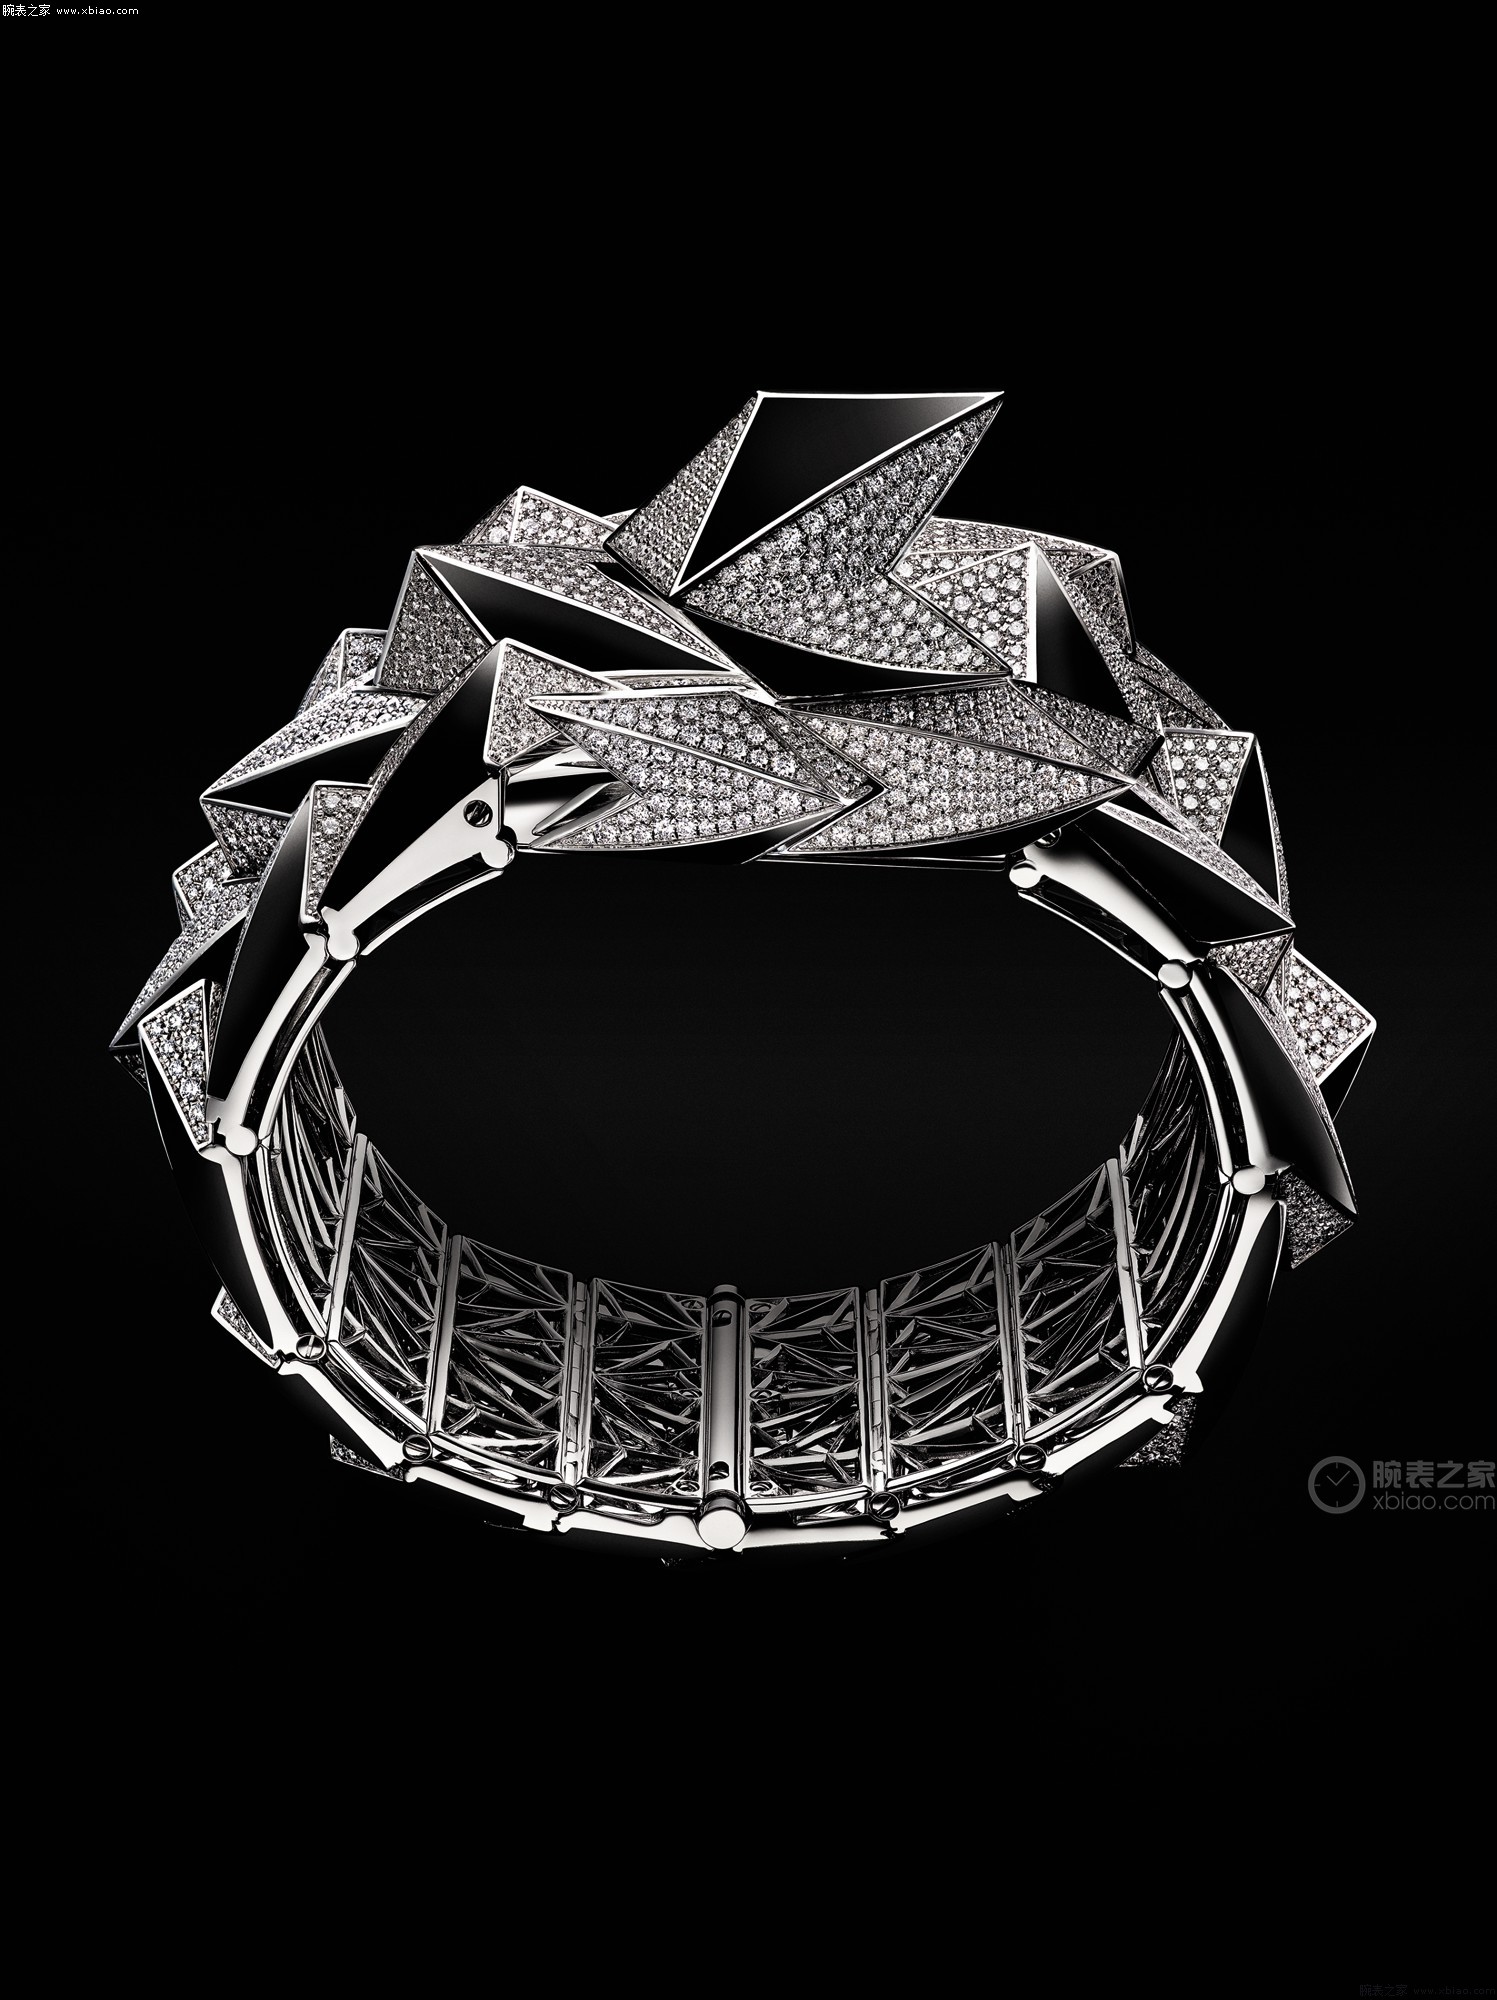 梵克雅宝2020高级珠宝新作 | Merveille d'Оmeraudes 祖母绿项链-第一黄金网